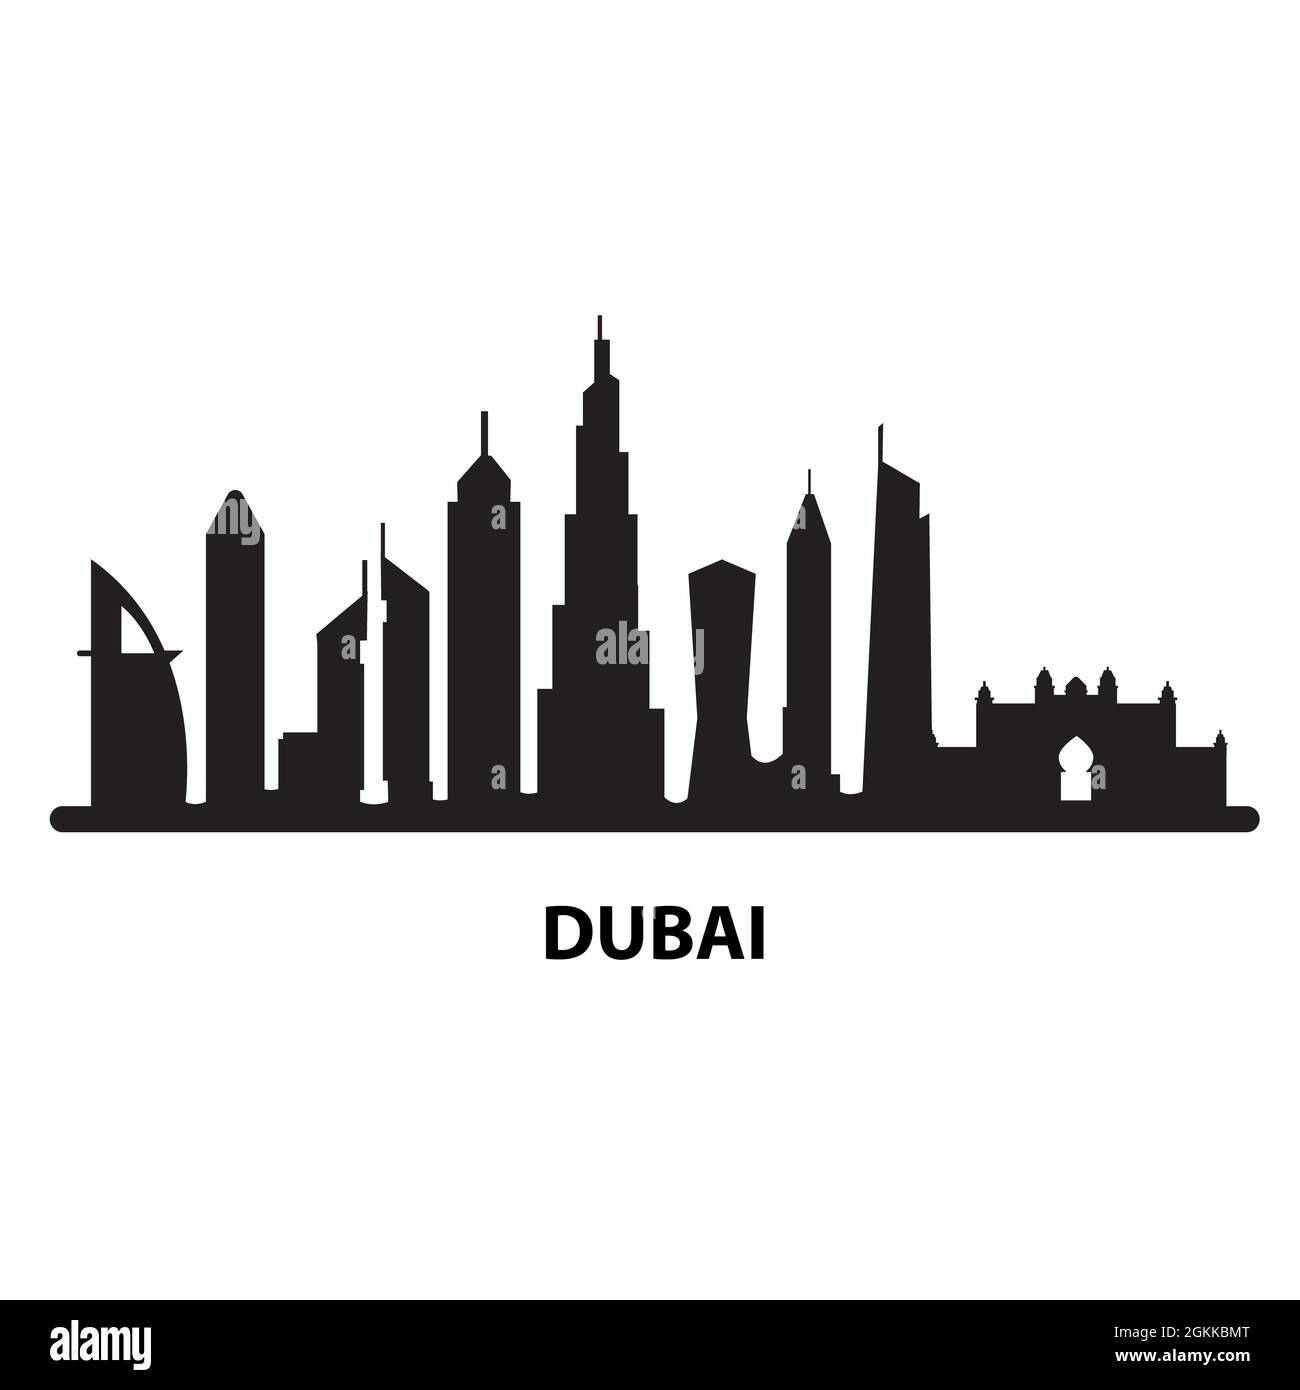 Dubai ciudad negra sobre fondo blanco. Cartel del horizonte de Dubai y sus monumentos. Emiratos Árabes Dubai Ciudad símbolo. Perfil de la silueta de los Emiratos Árabes Unidos en Dubái. Estilo plano. Foto de stock